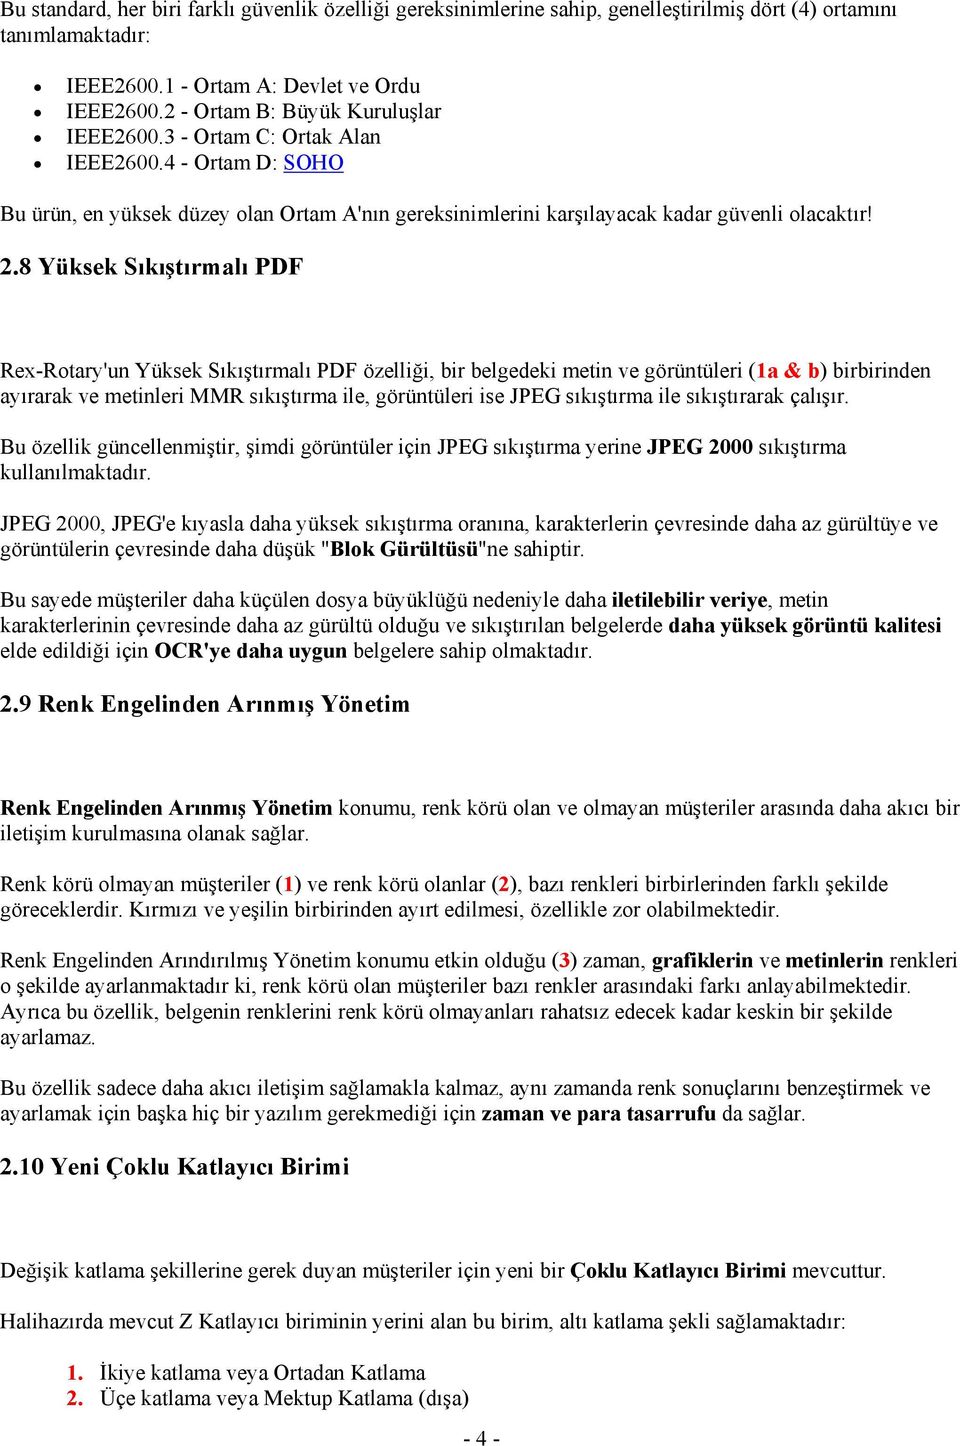 8 Yüksek Sıkıştırmalı PDF Rex-Rotary'un Yüksek Sıkıştırmalı PDF özelliği, bir belgedeki metin ve görüntüleri (1a & b) birbirinden ayırarak ve metinleri MMR sıkıştırma ile, görüntüleri ise JPEG